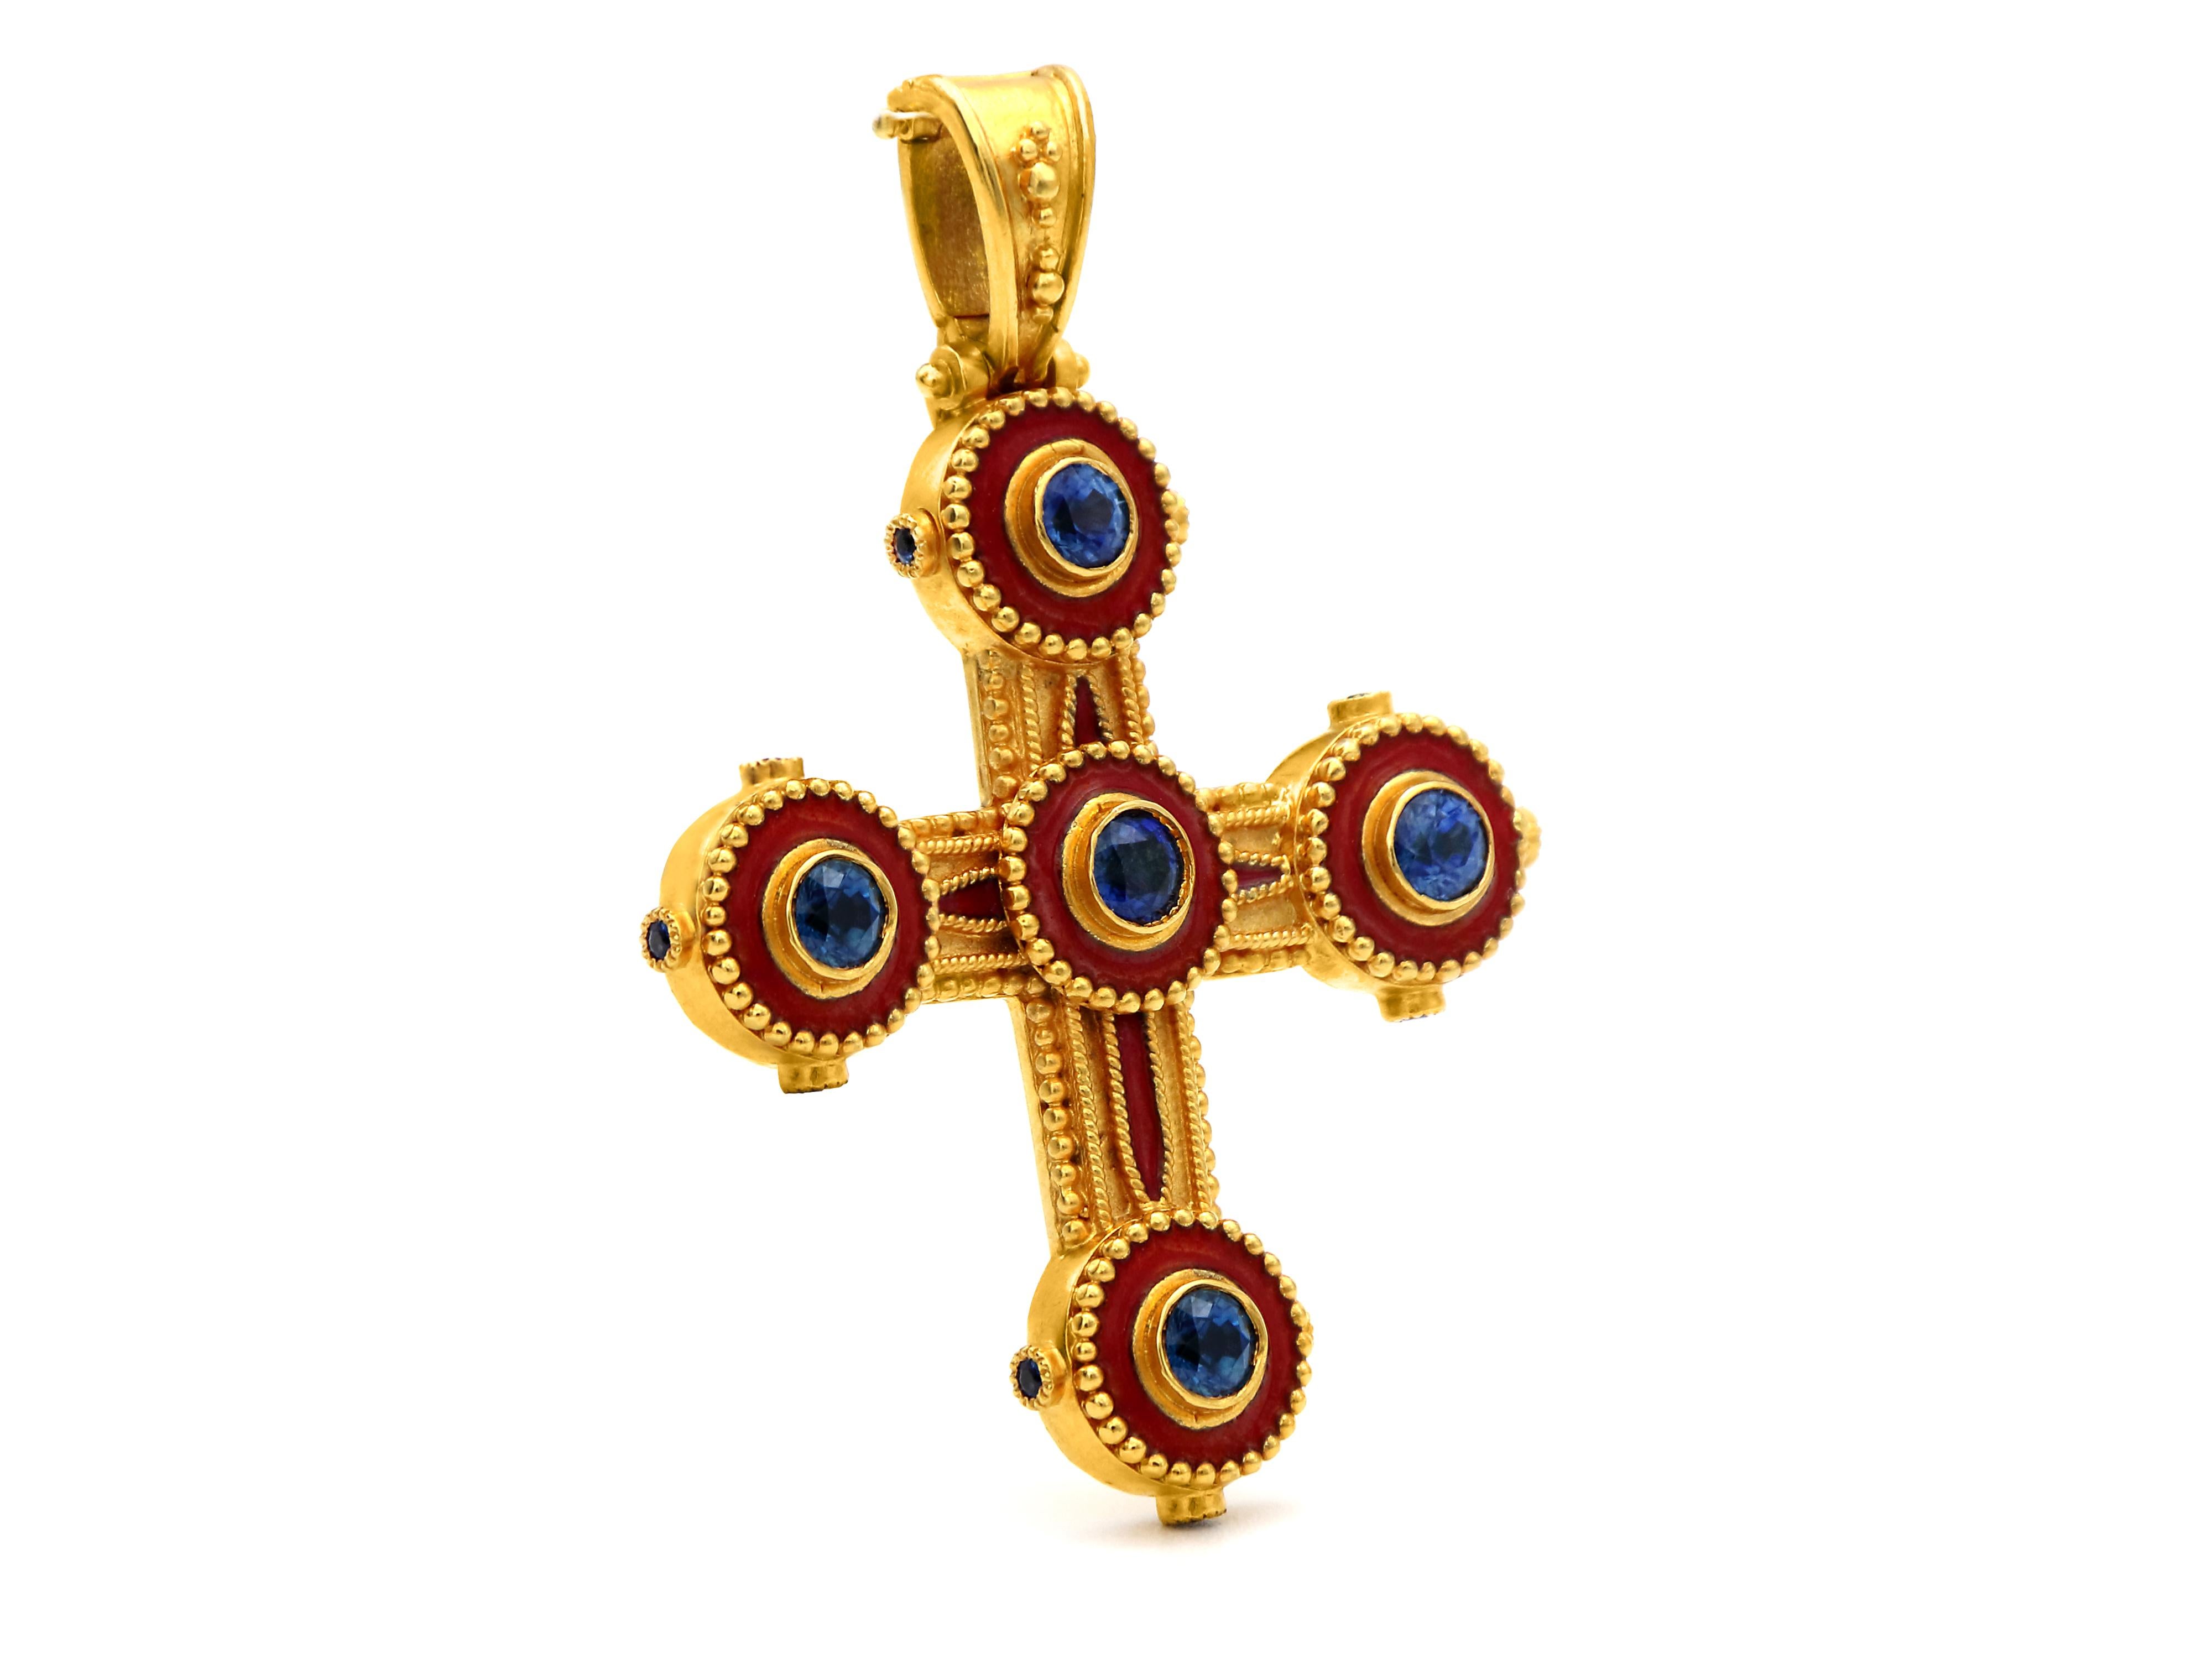 Byzantinisches Kreuz aus 18 Karat Gold, komplett handgefertigt, verziert mit Granulation, Saphiren mit rundem Schliff von 1,15 Karat und roter Emaille. An den Seiten des Kreises befinden sich drei kleinere Saphire von insgesamt 0,36 Karat, die dem